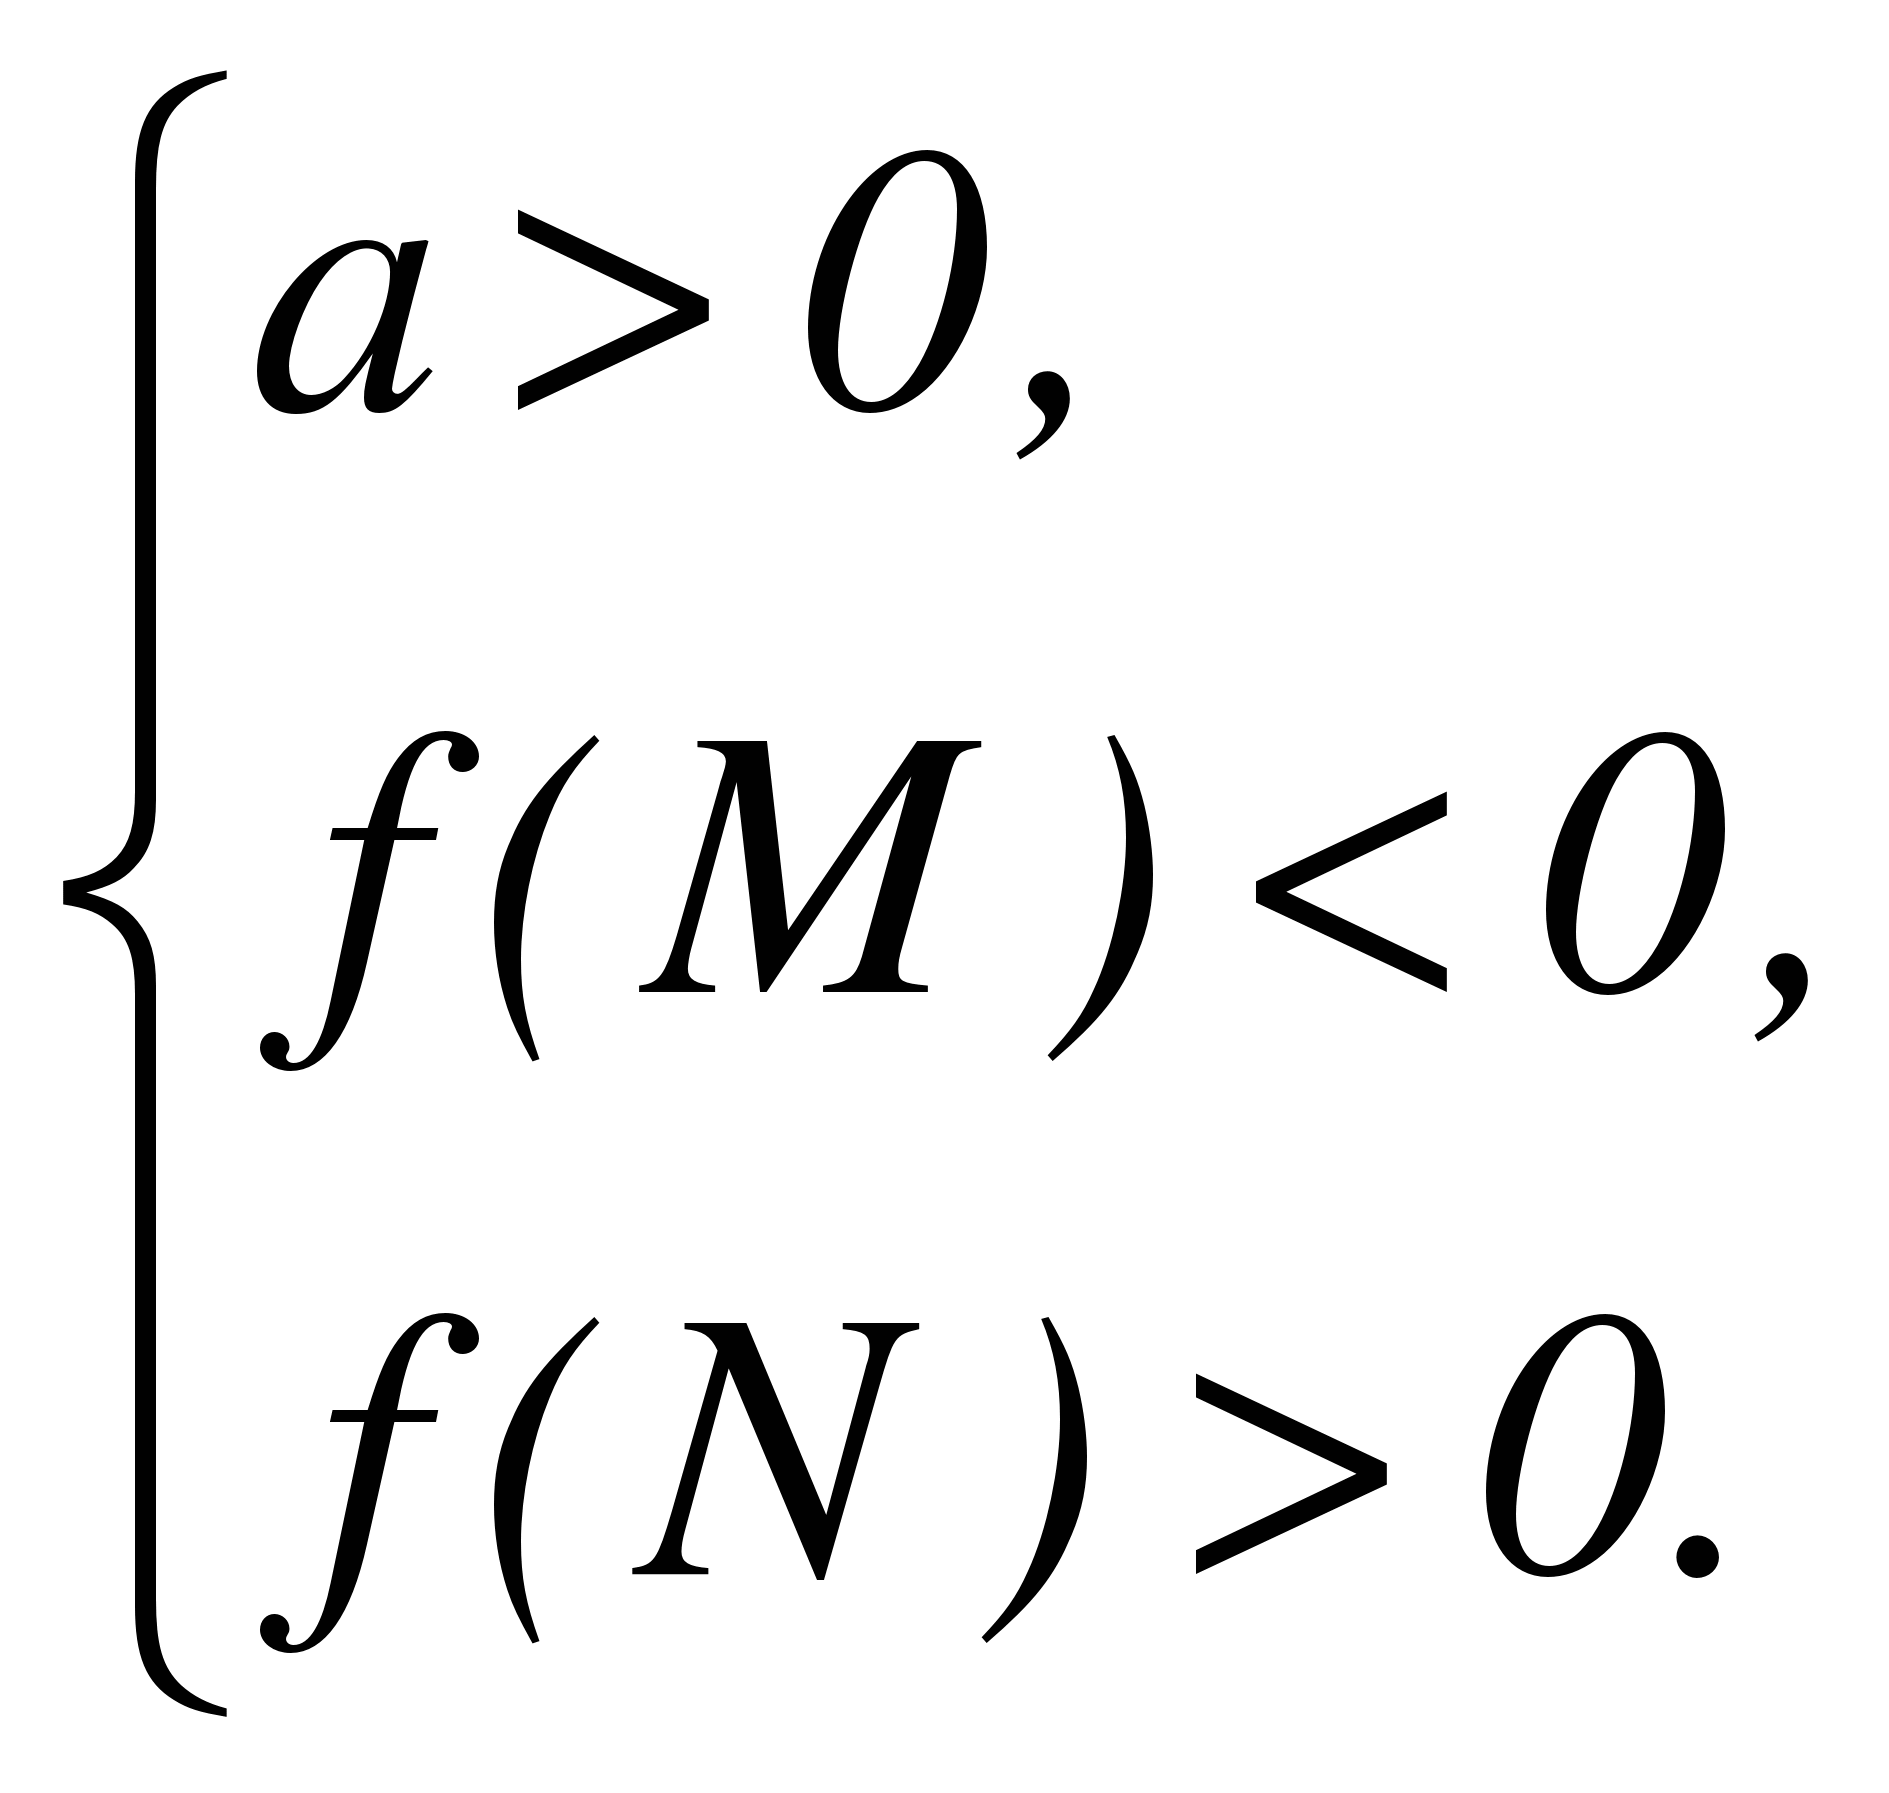 Параметр в квадратном уравнении